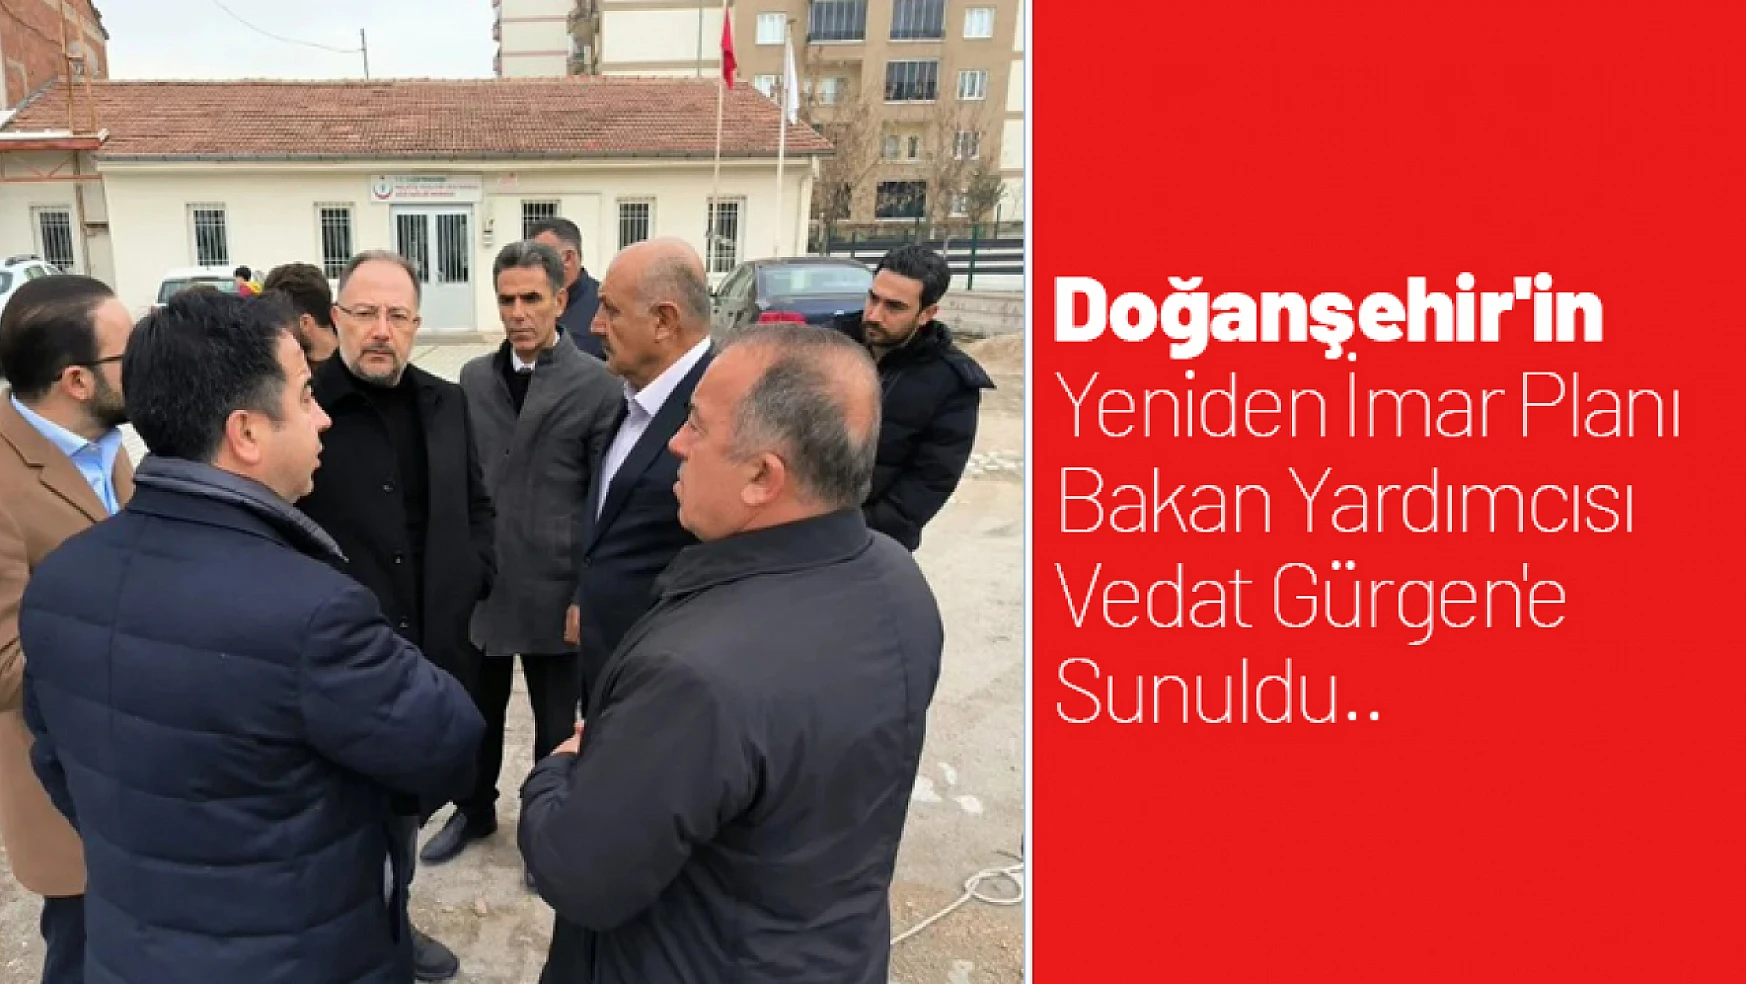 Doğanşehir'in Yeniden İmar Planı Bakan Yardımcısı Vedat Gürgen'e Sunuldu..